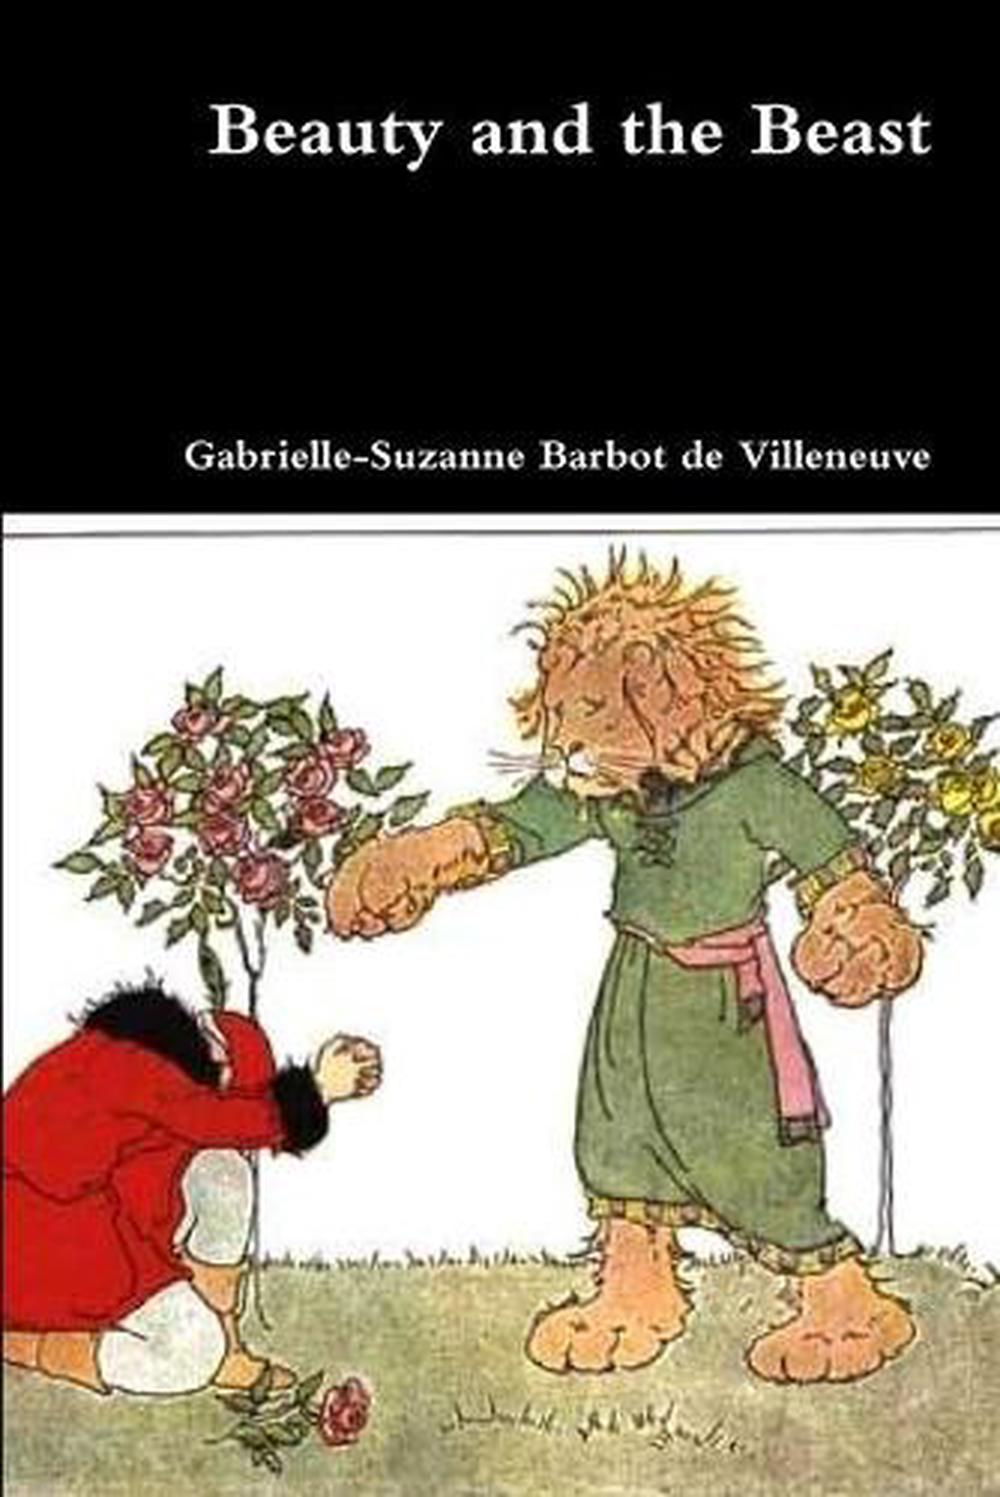 the beauty and the beast gabrielle suzanne barbot de villeneuve